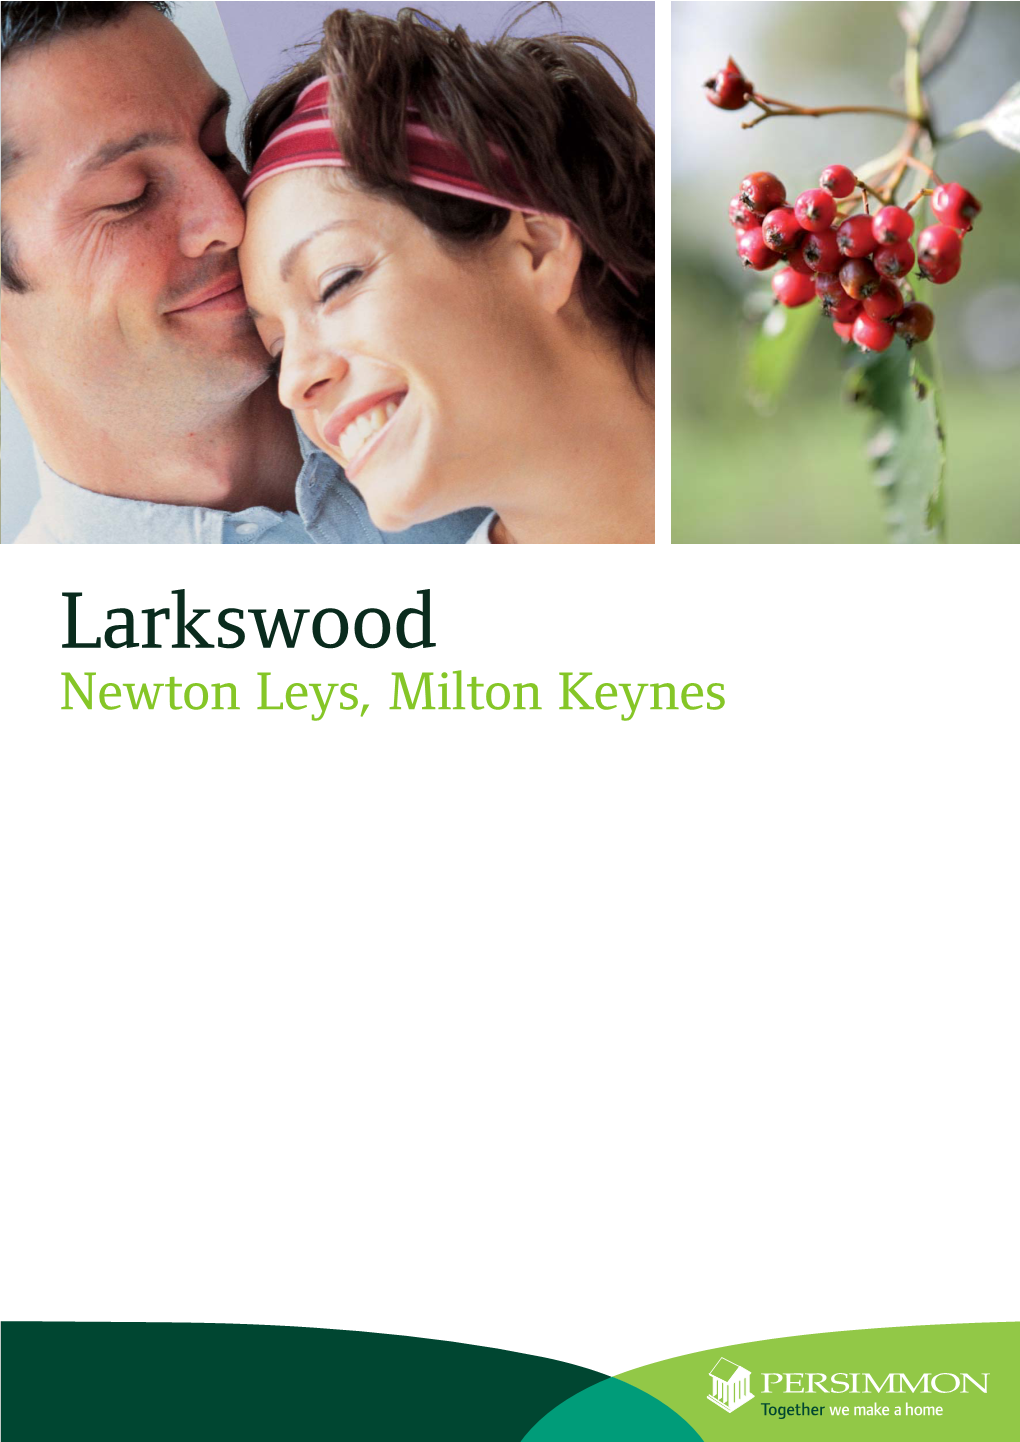 Newton Leys Site Plan